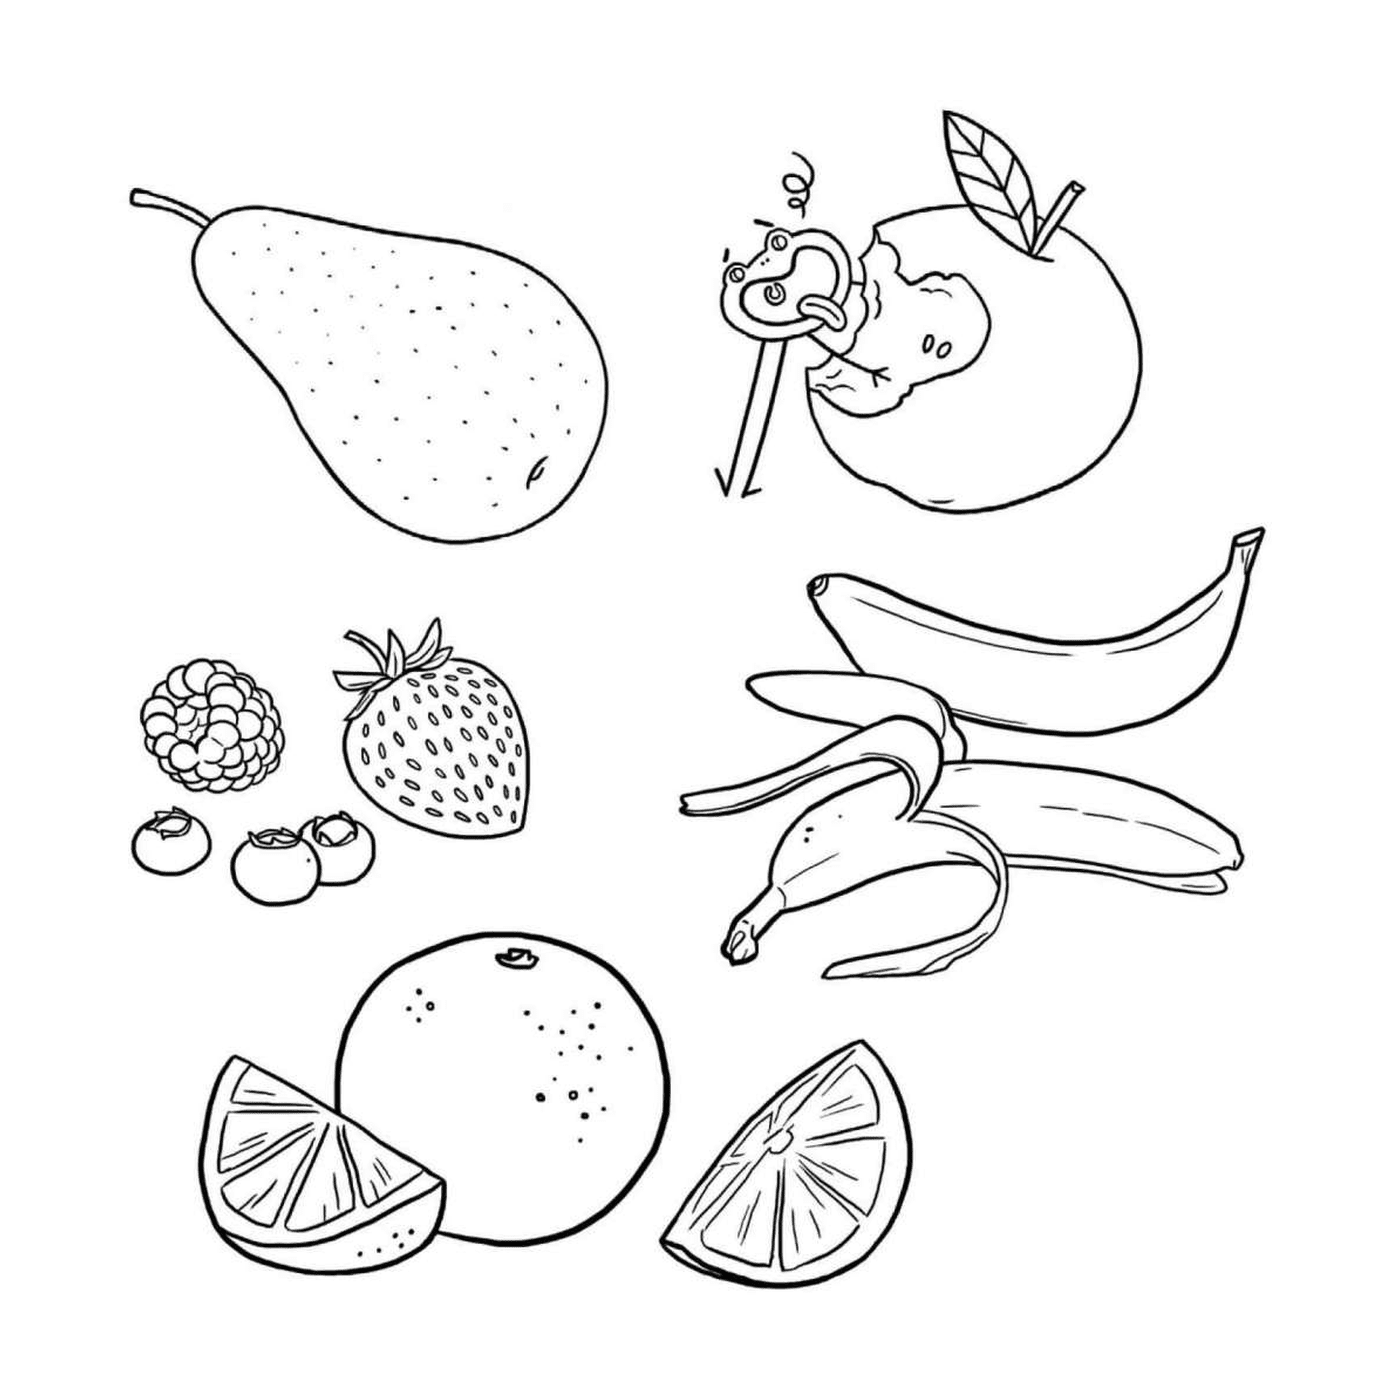  النظام الموازن مع الفاكهة 